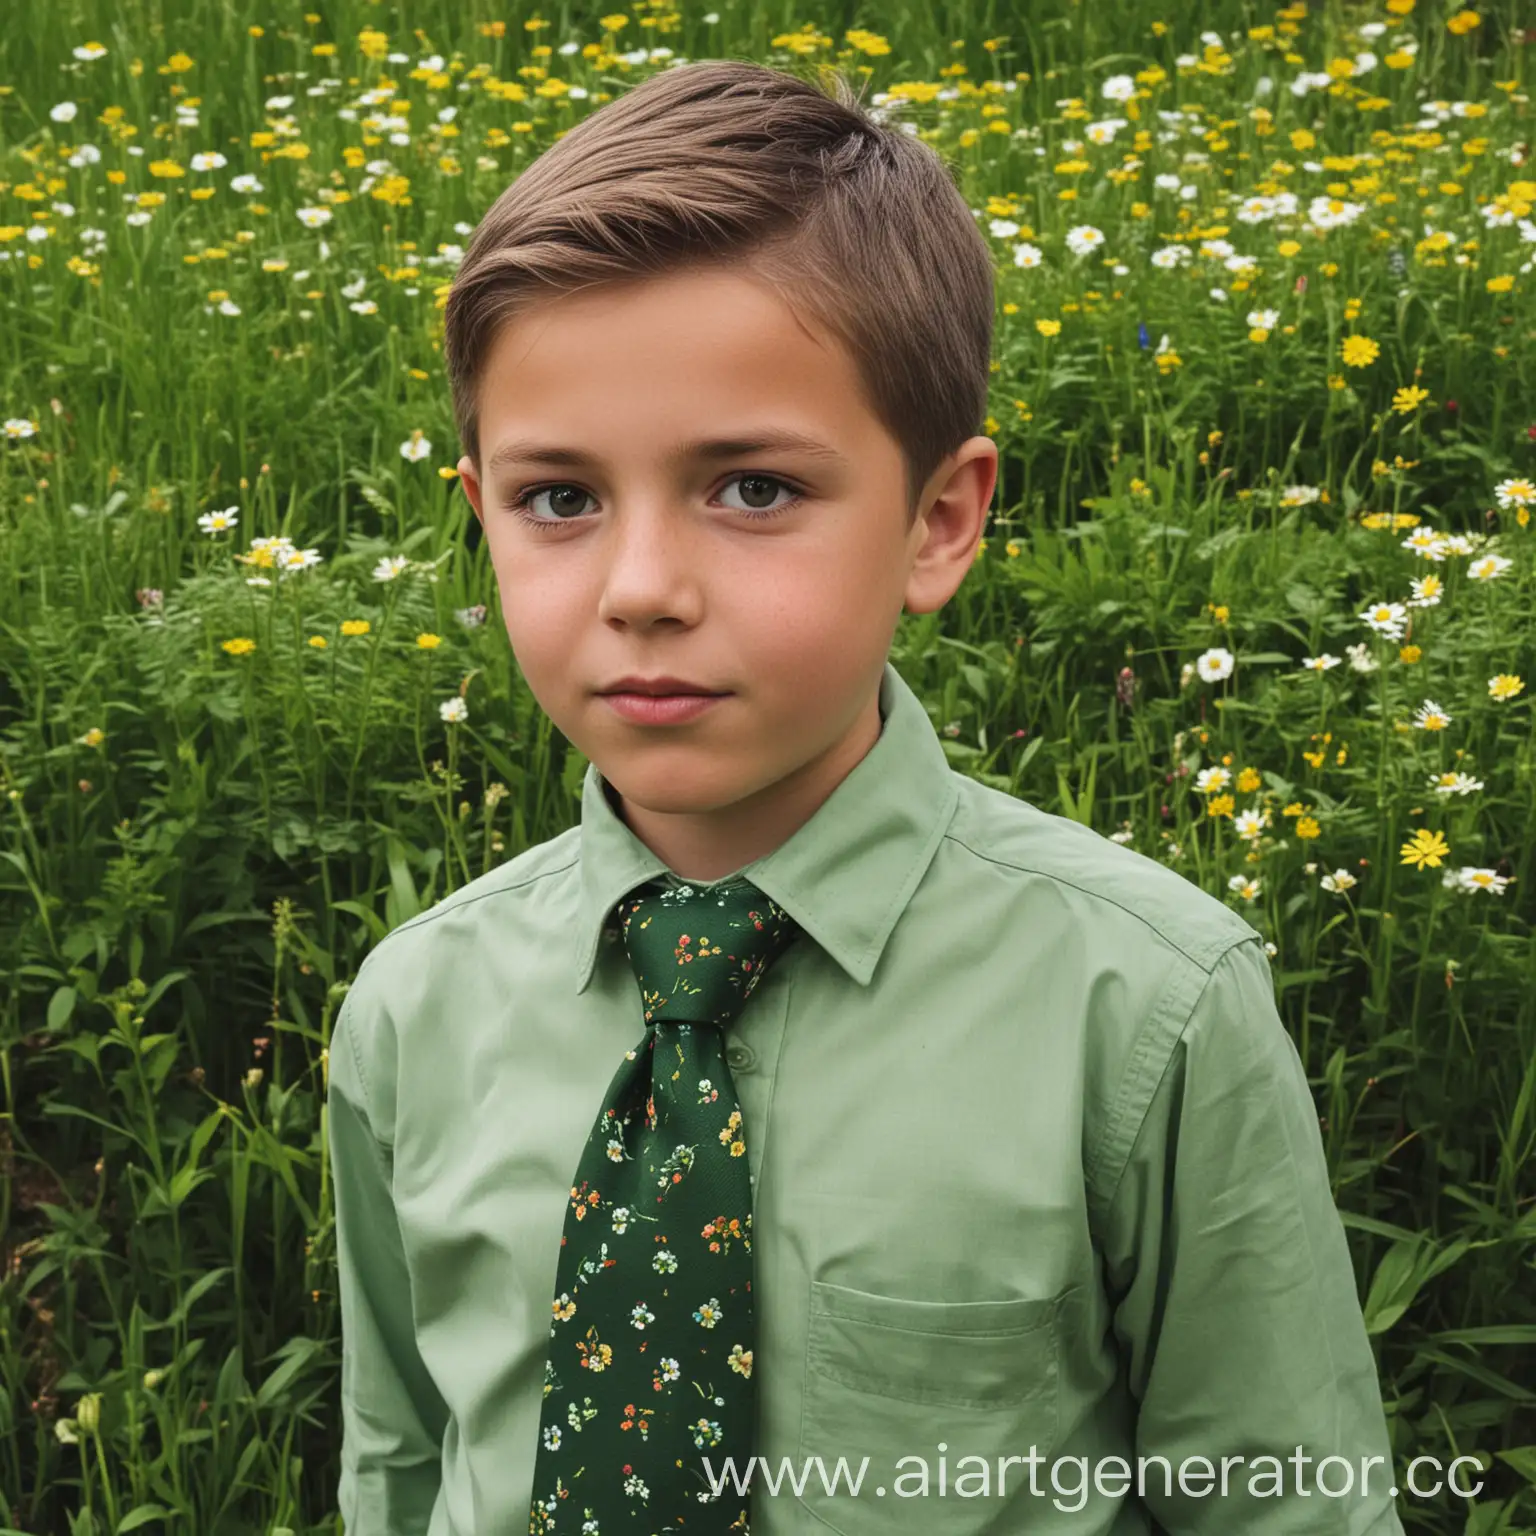 Мальчик, пионерский галстук зеленый, школьник, природа, цветок